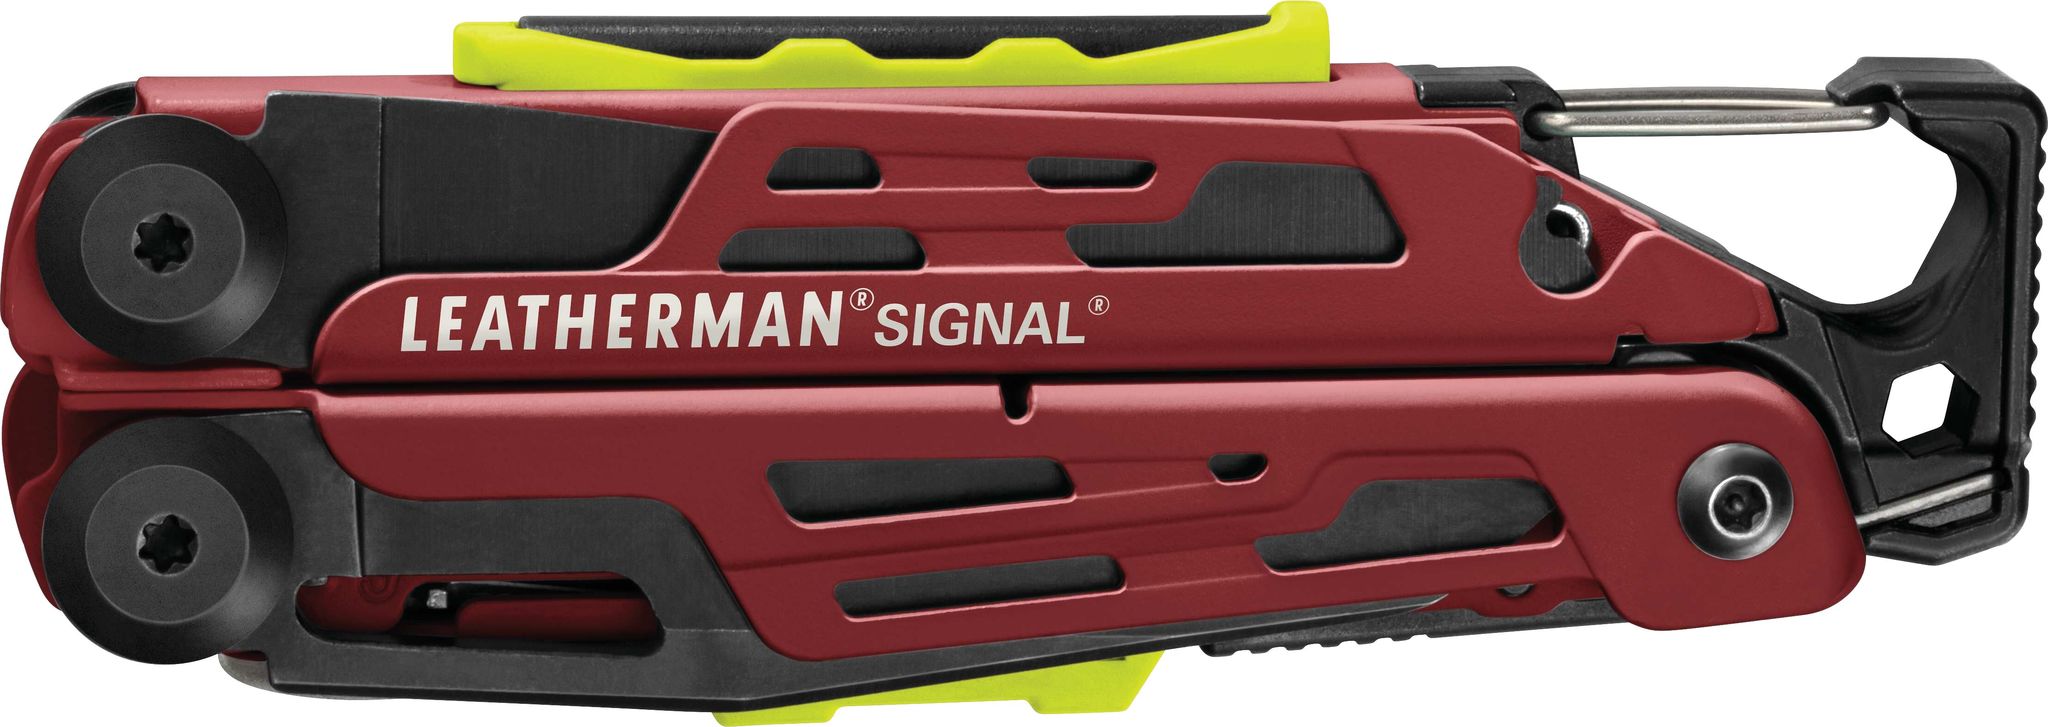 Leatherman Signal Multi-tools Pliers